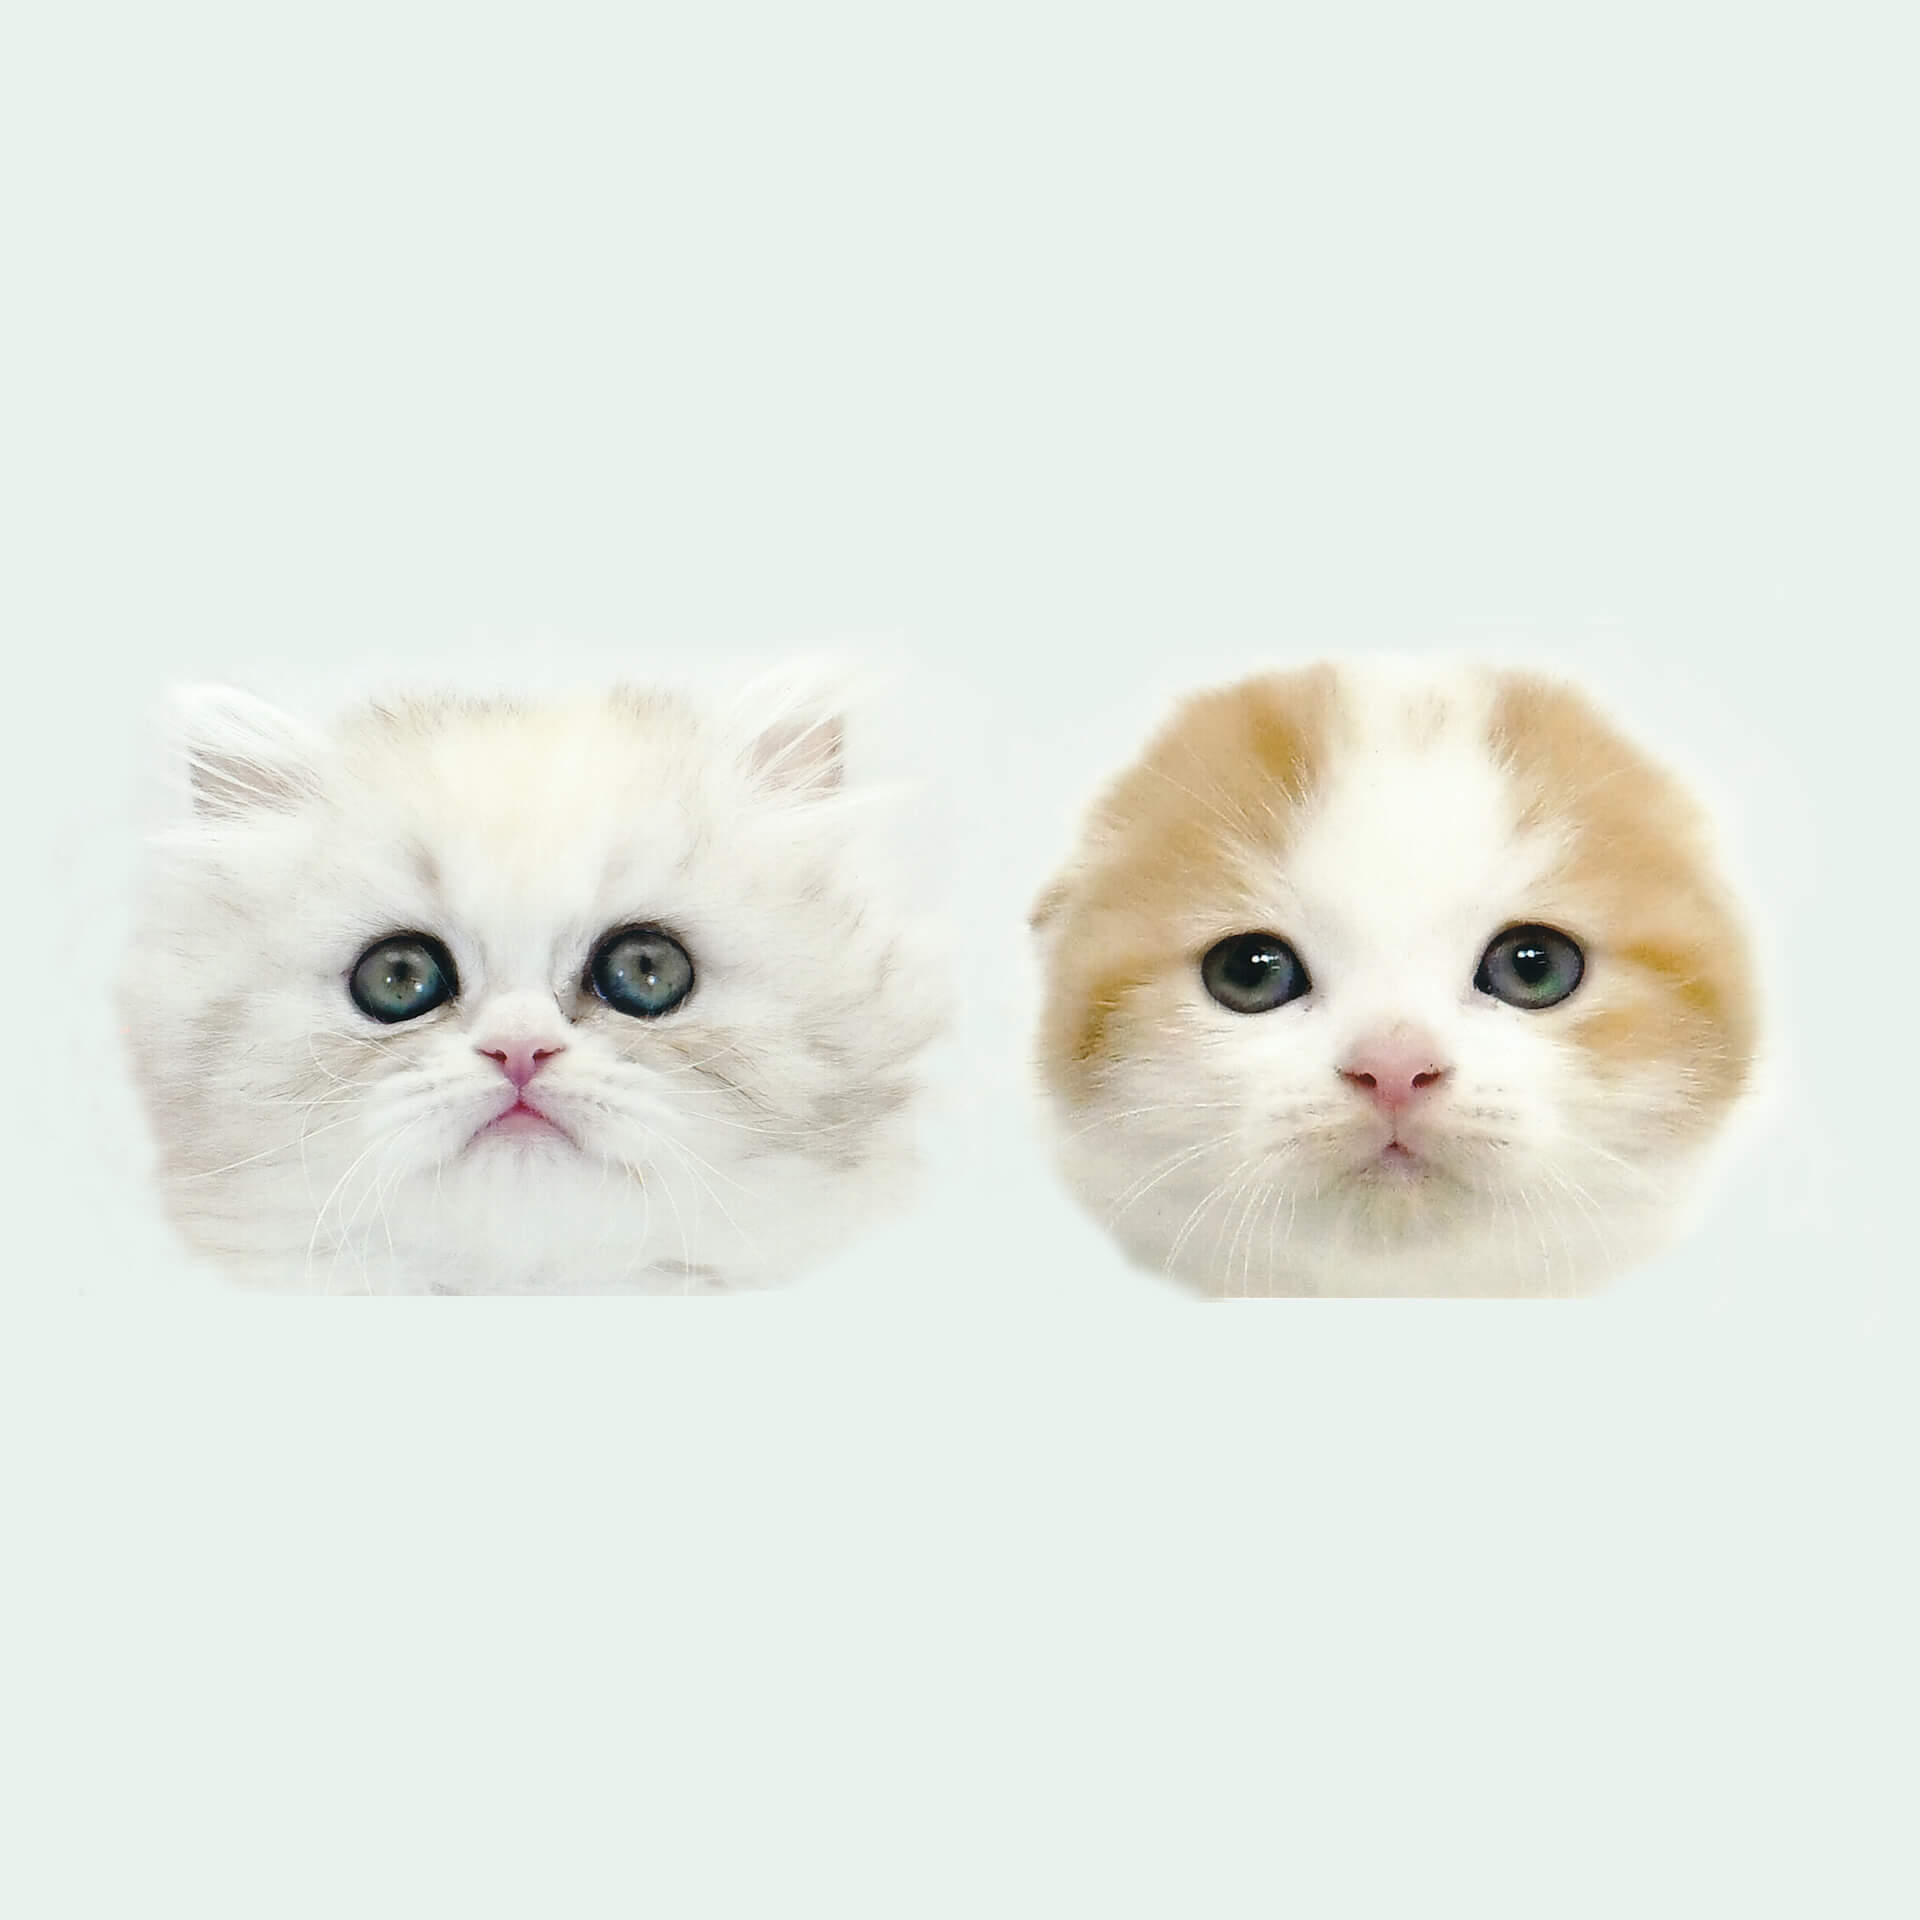 【猫ちゃんニュース解禁】2匹の猫「マリア＆リボン」が歌う”猫ちゃんのラブソング”MVがスーパー猫の日に公開決定 music220221_maria-ribbon-01